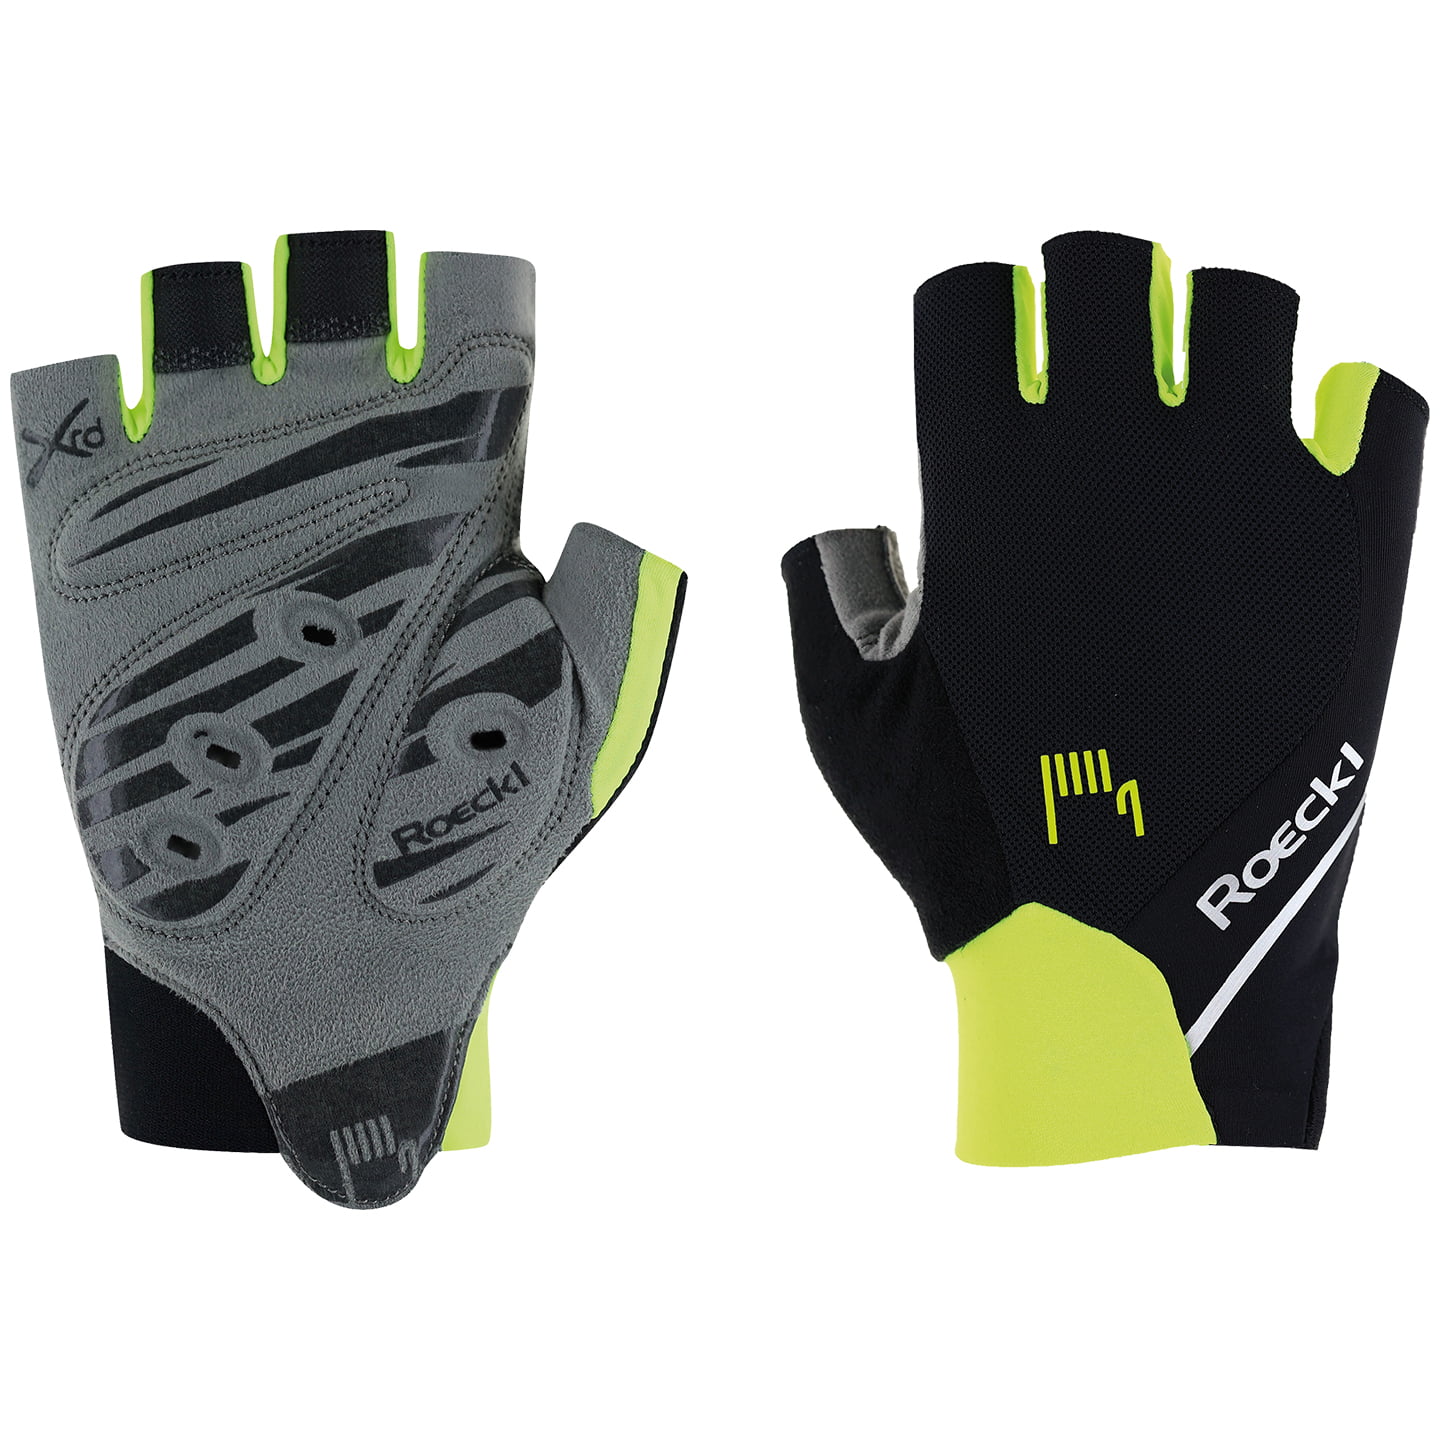 ROECKL Mori Full Finger Gloves, for men, size 10,5, Bike gloves, Bike clothing